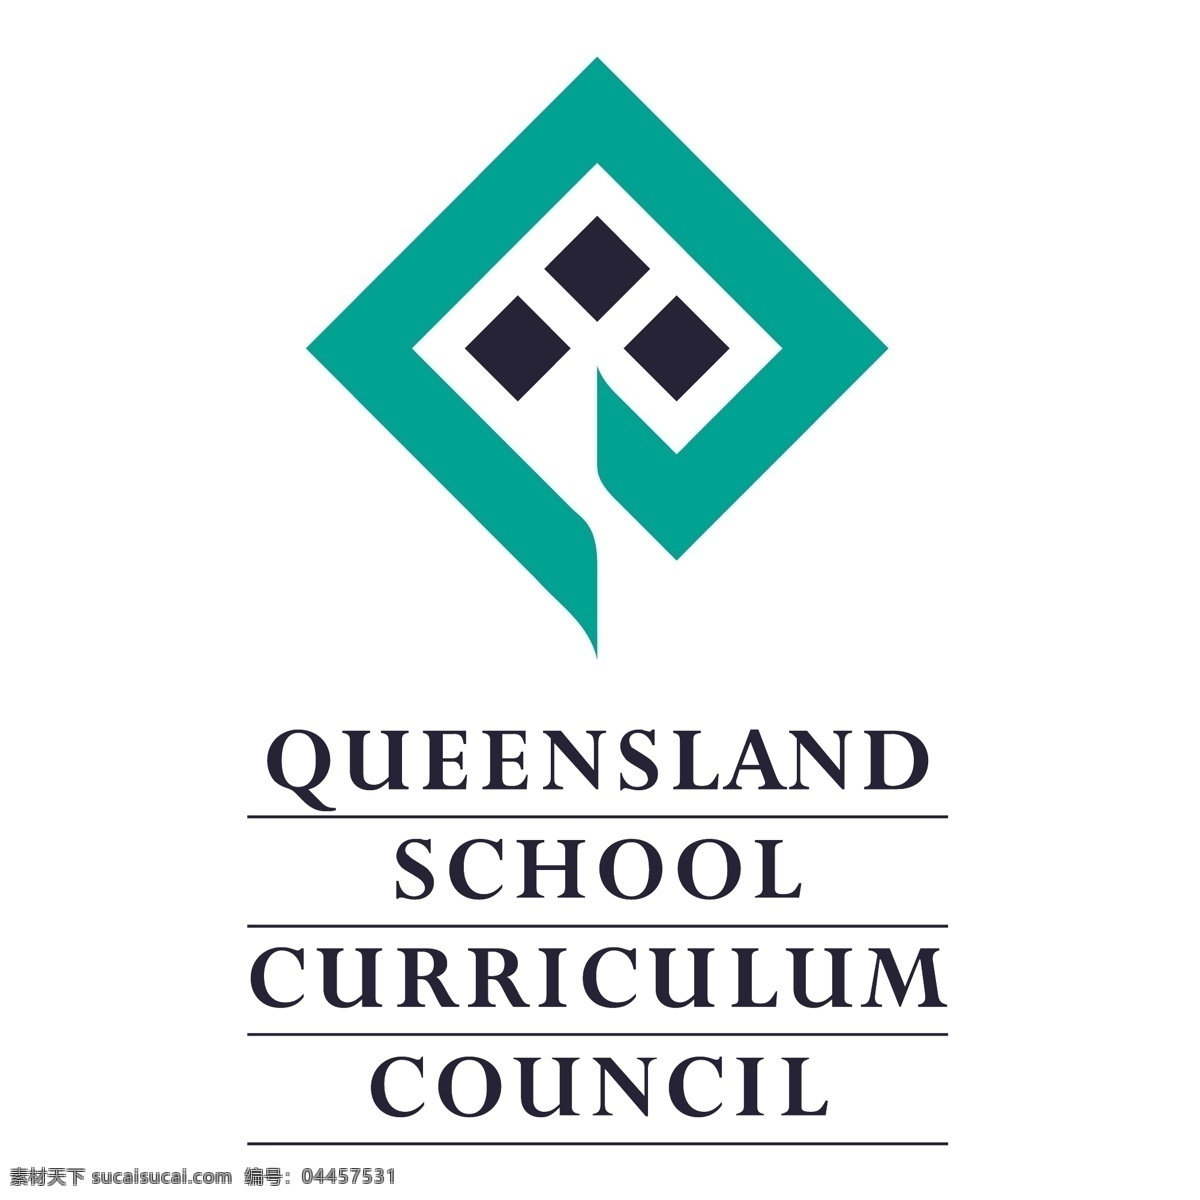 昆士兰 学校 课程 委员会 自由 标志 psd源文件 logo设计